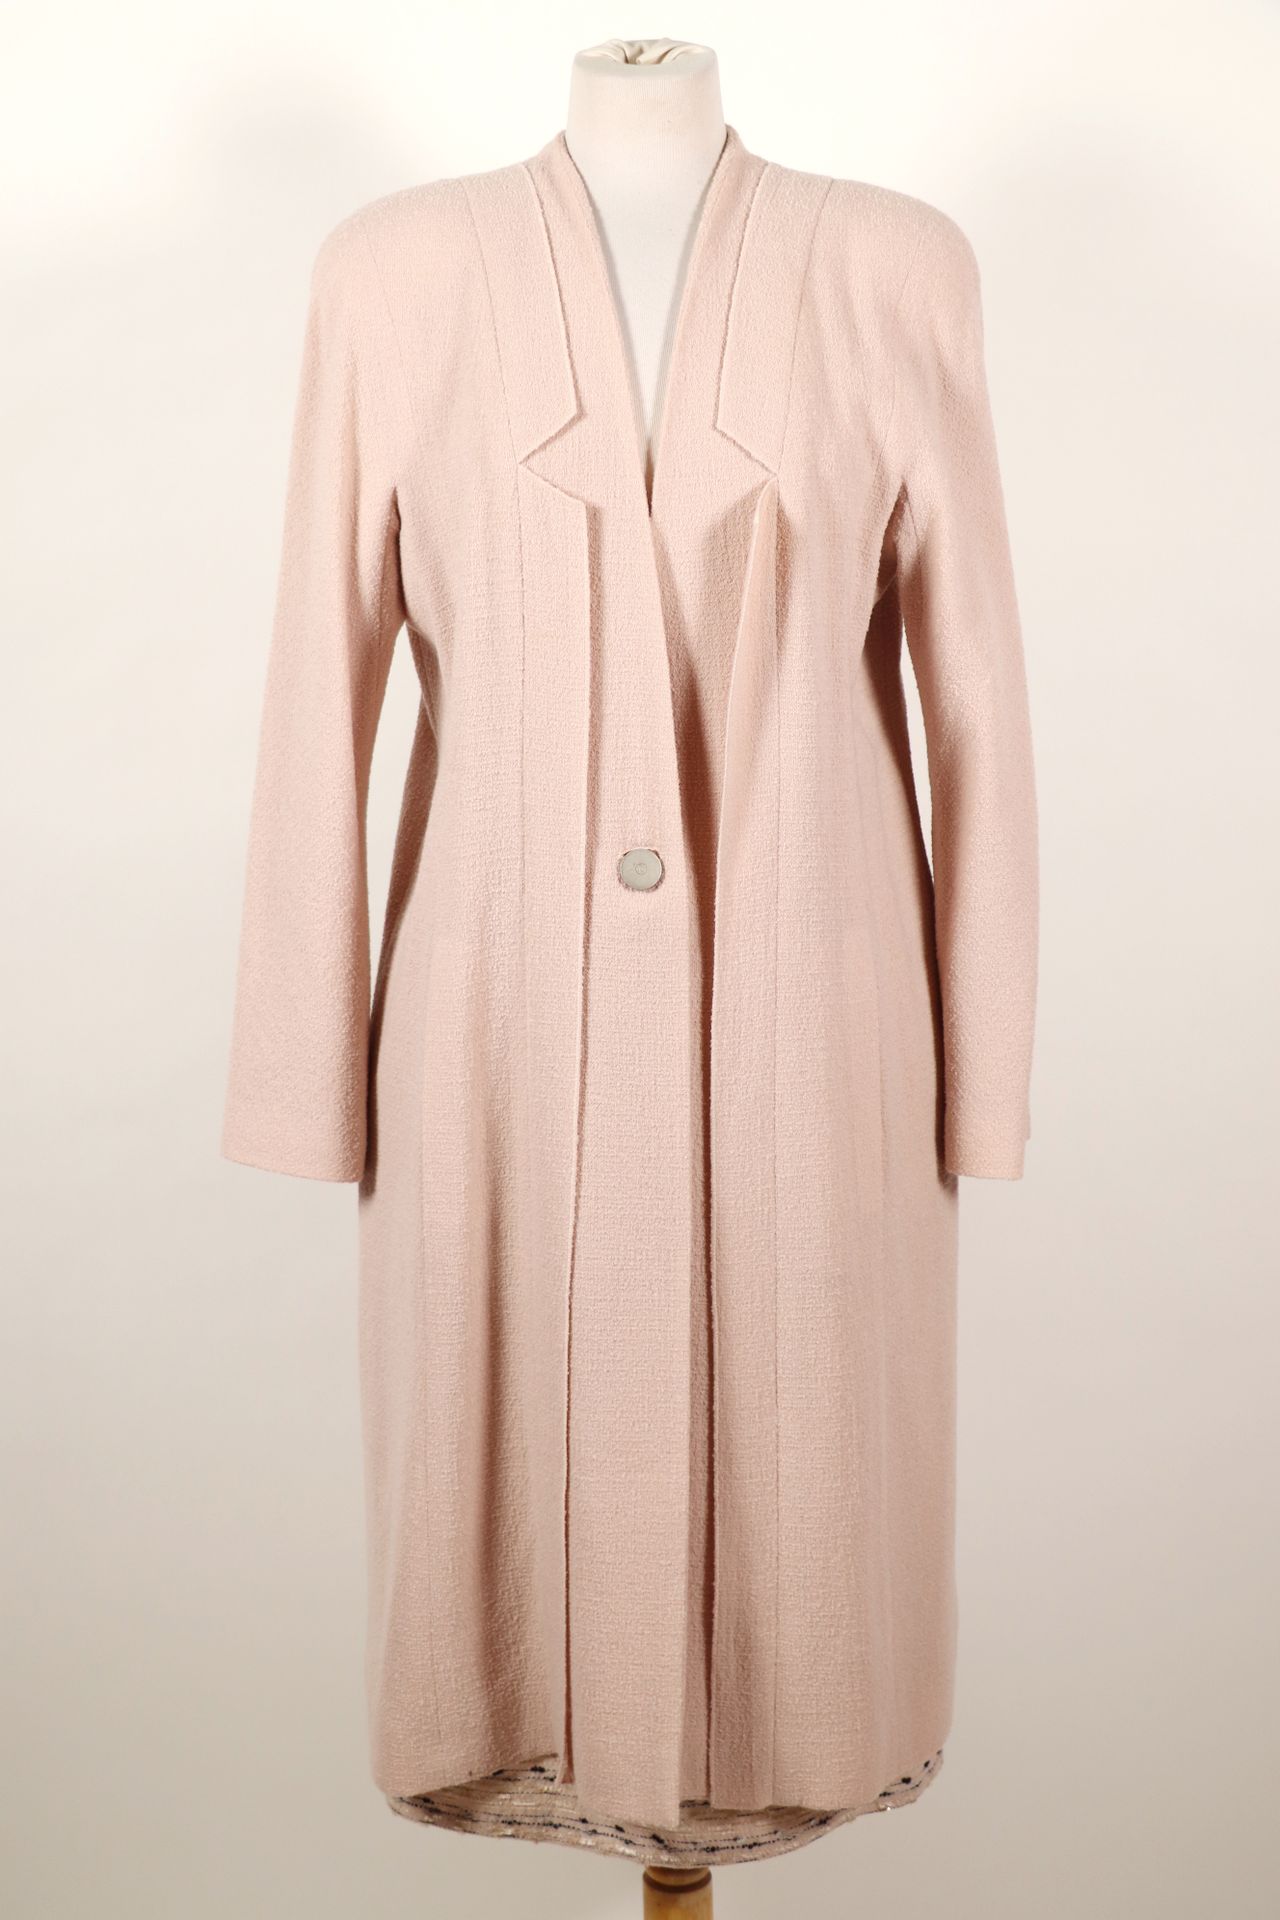 Null 香奈儿 - 粉红色套装，外套和裙子，羊毛和聚酰胺材质。长外套有一个纽扣，毛呢裙有两个口袋和两个纽扣，尺寸为46号。